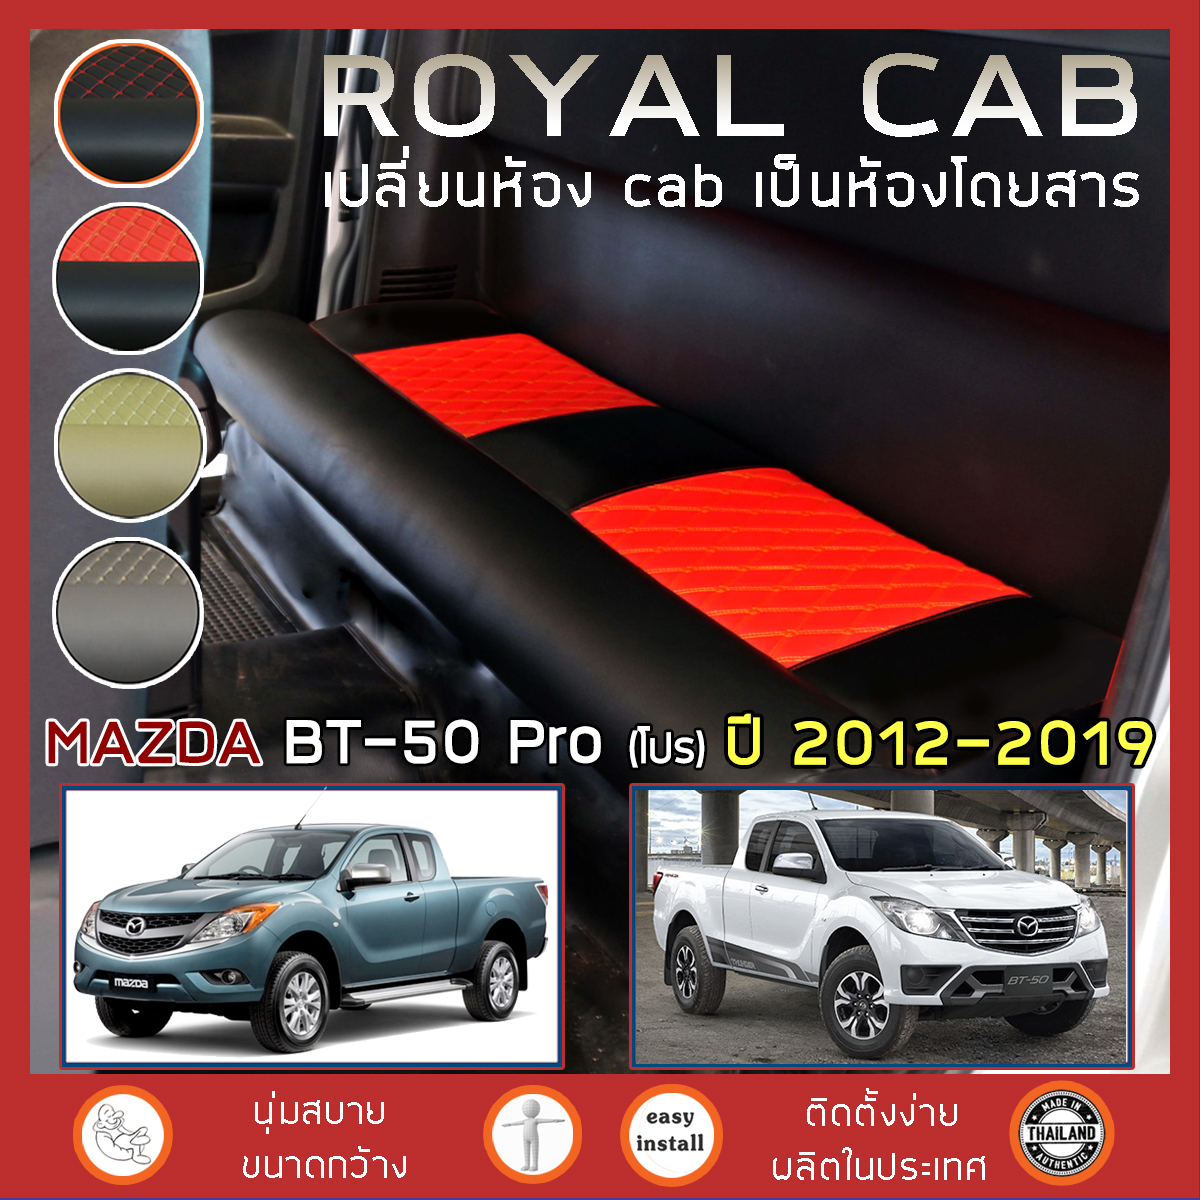 ROYAL CAB เบาะแค็บ BT-50 Pro ปี 2012-2019 มาสด้า บีที50 โปร แค็บ เบาะรองนั่ง MAZDA กระบะแคป หนัง PVC คุณภาพ ฟองน้ำ 2 ชั้น - ลาย 6D